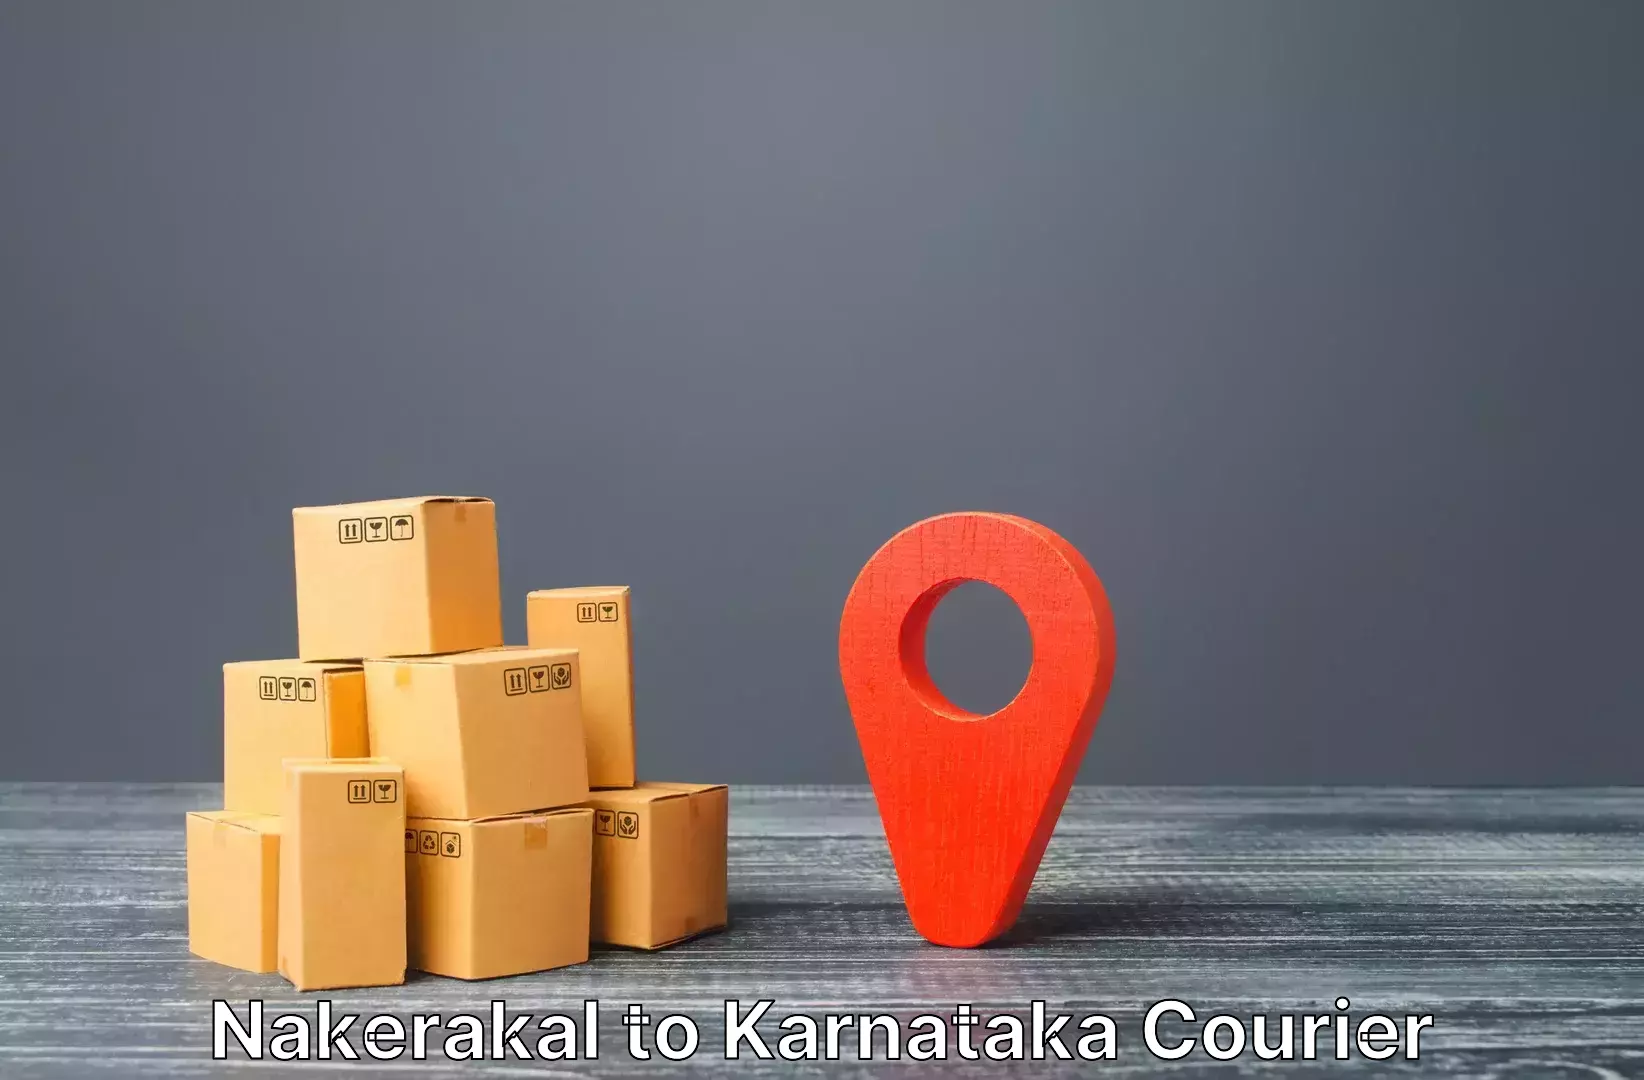 Bulk luggage shipping Nakerakal to Mysore